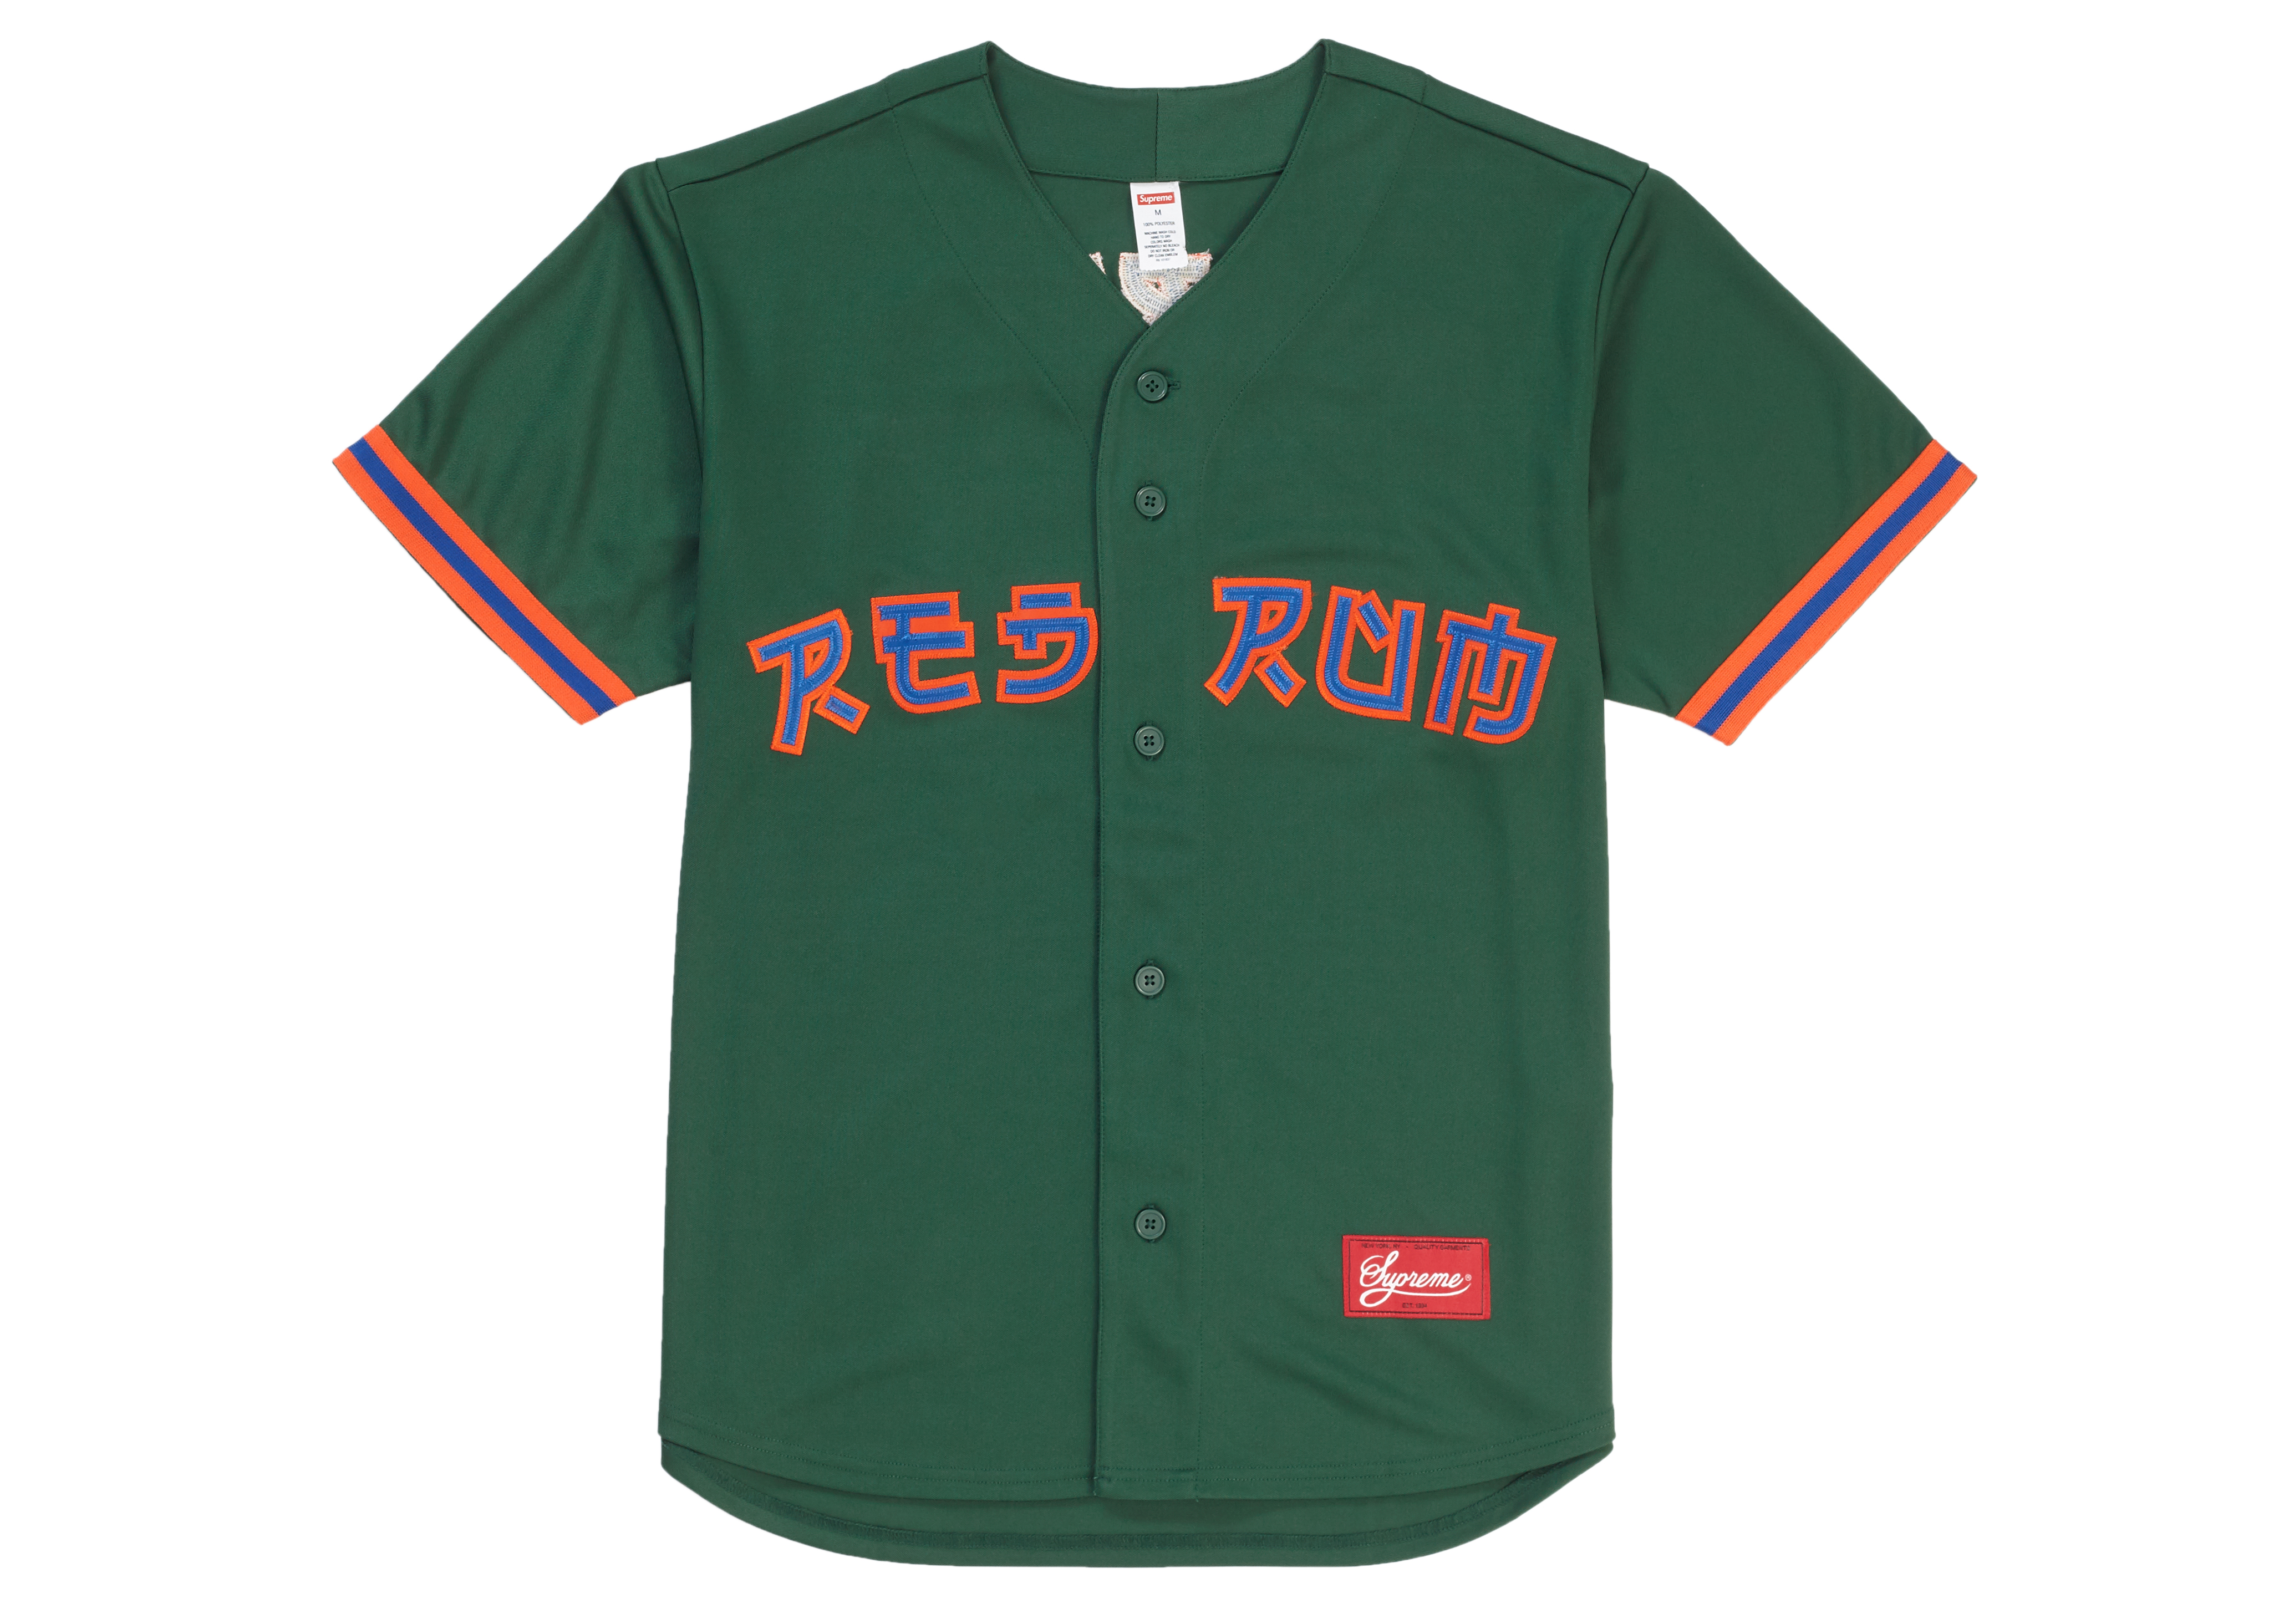 【本日発送】Supreme Red Rum Baseball Jersey